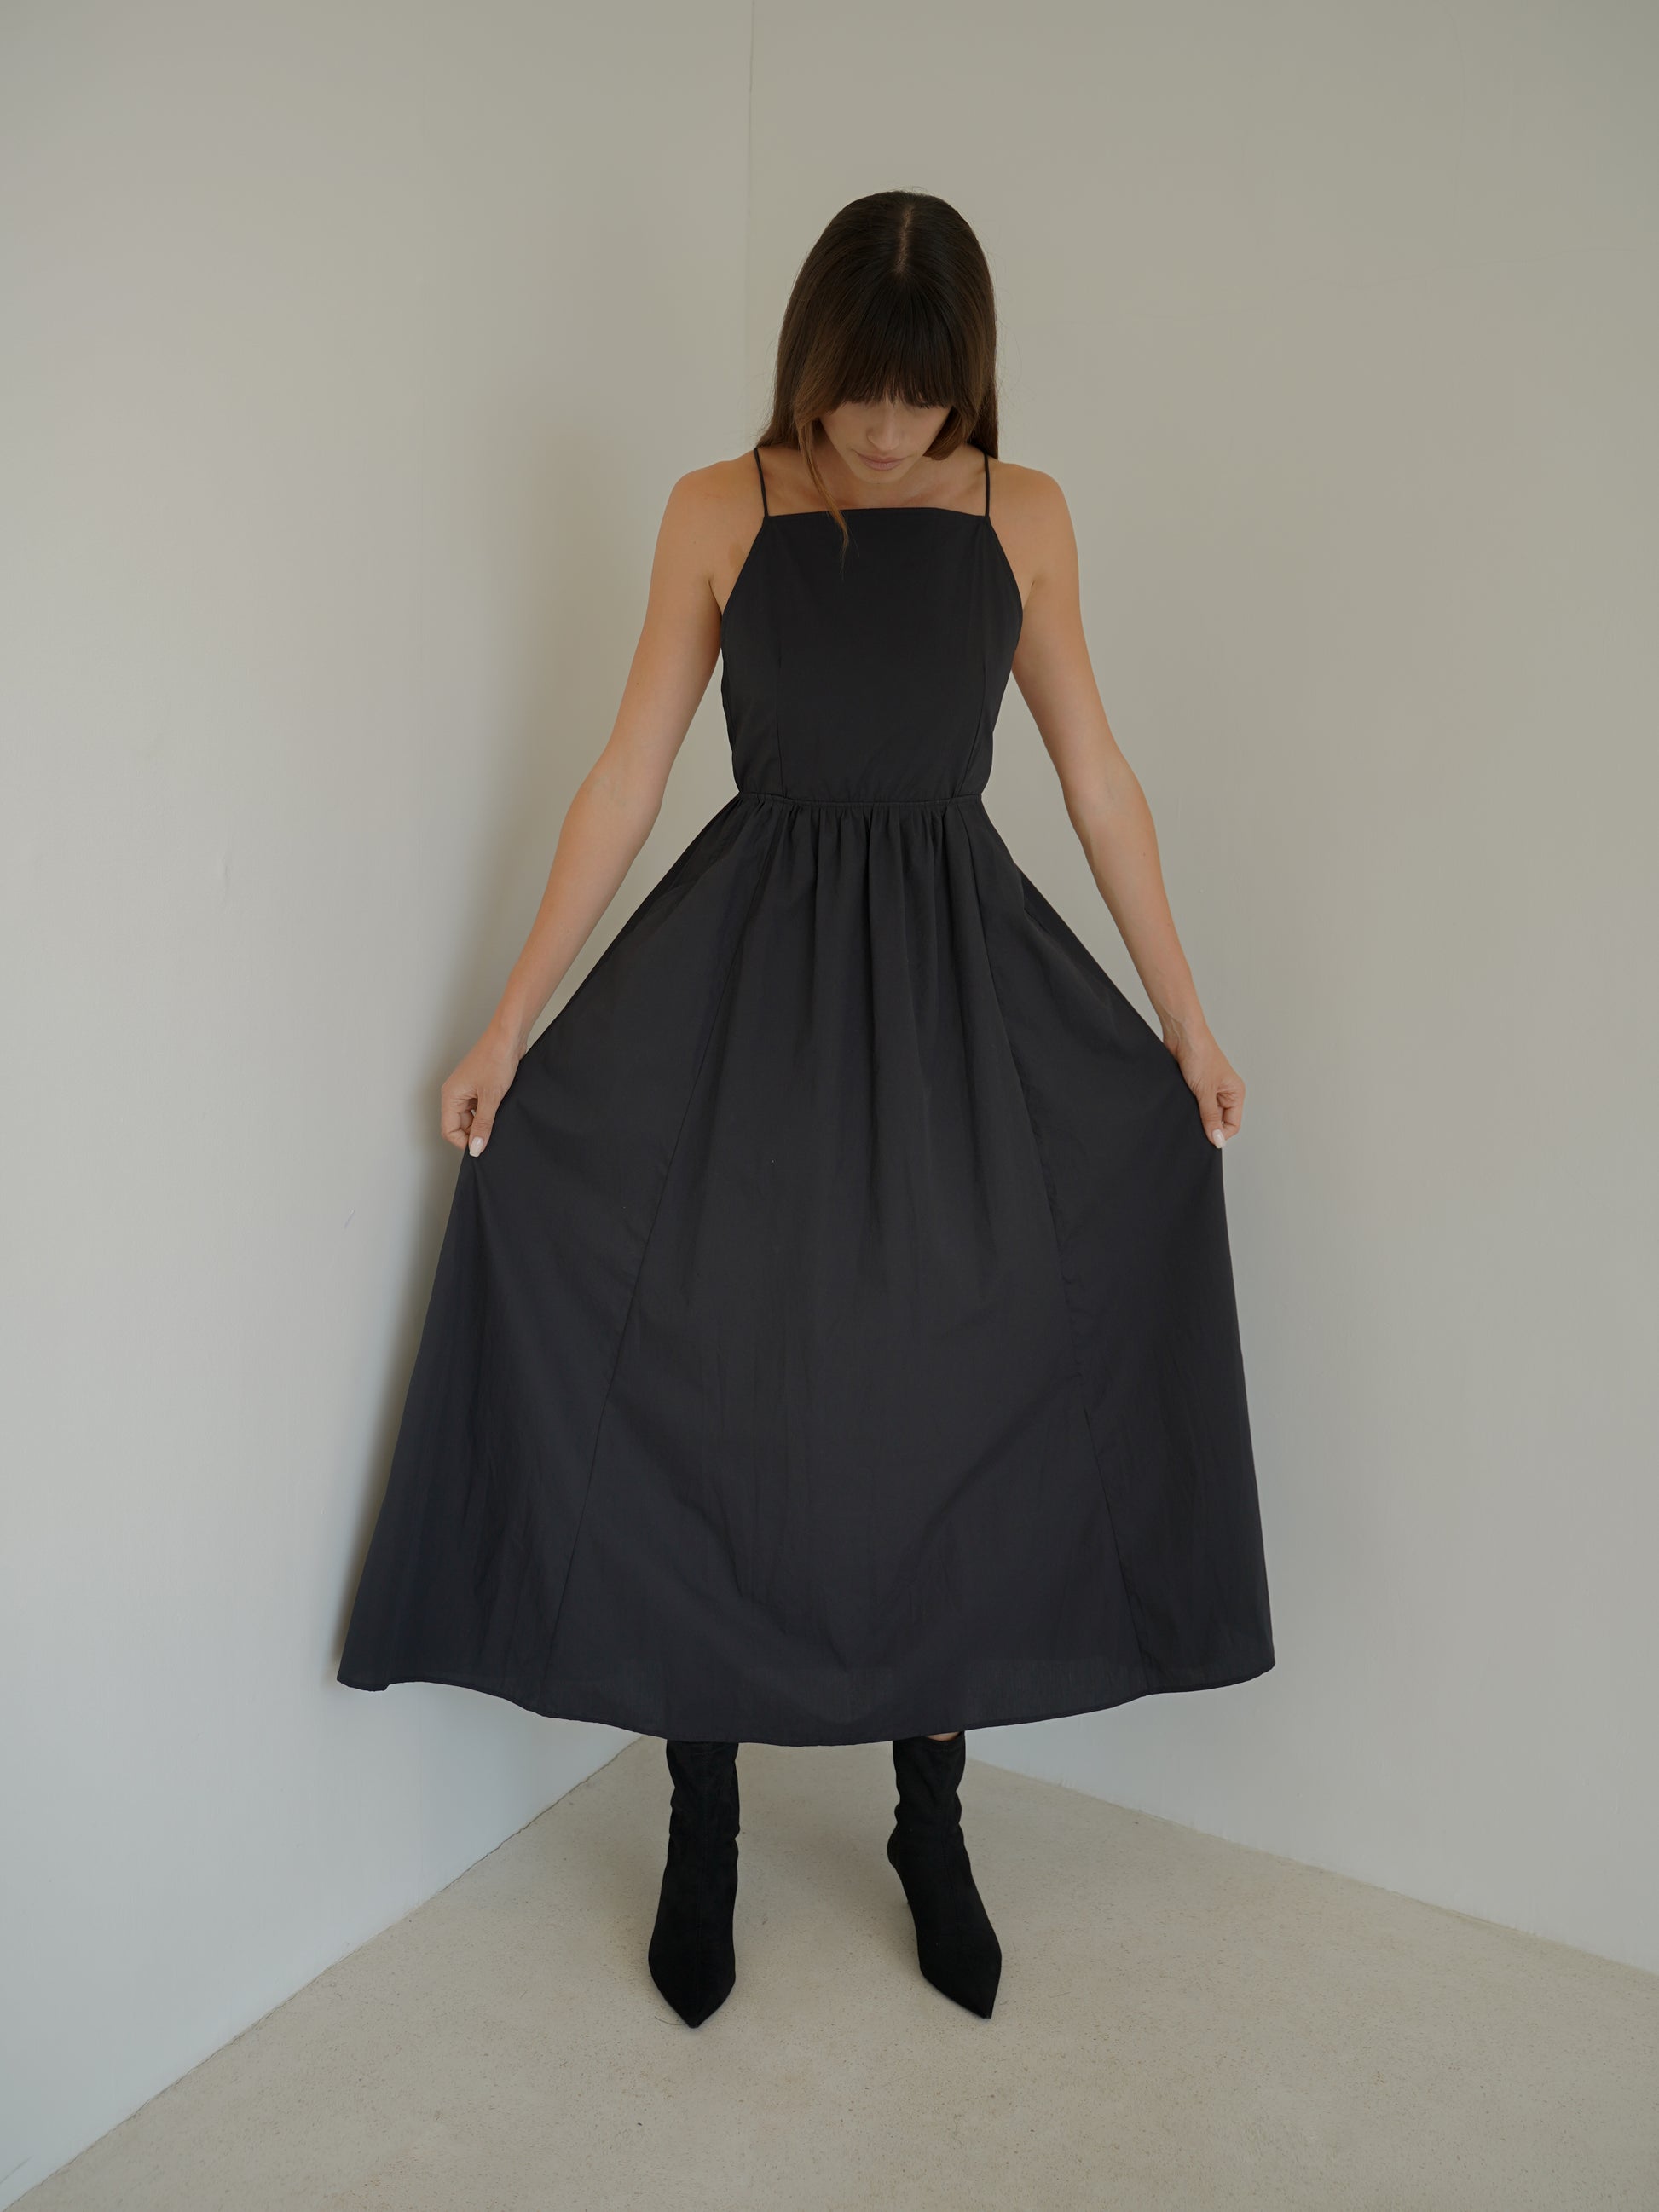 Calliope Backless Dress in Black - l u • c i e e